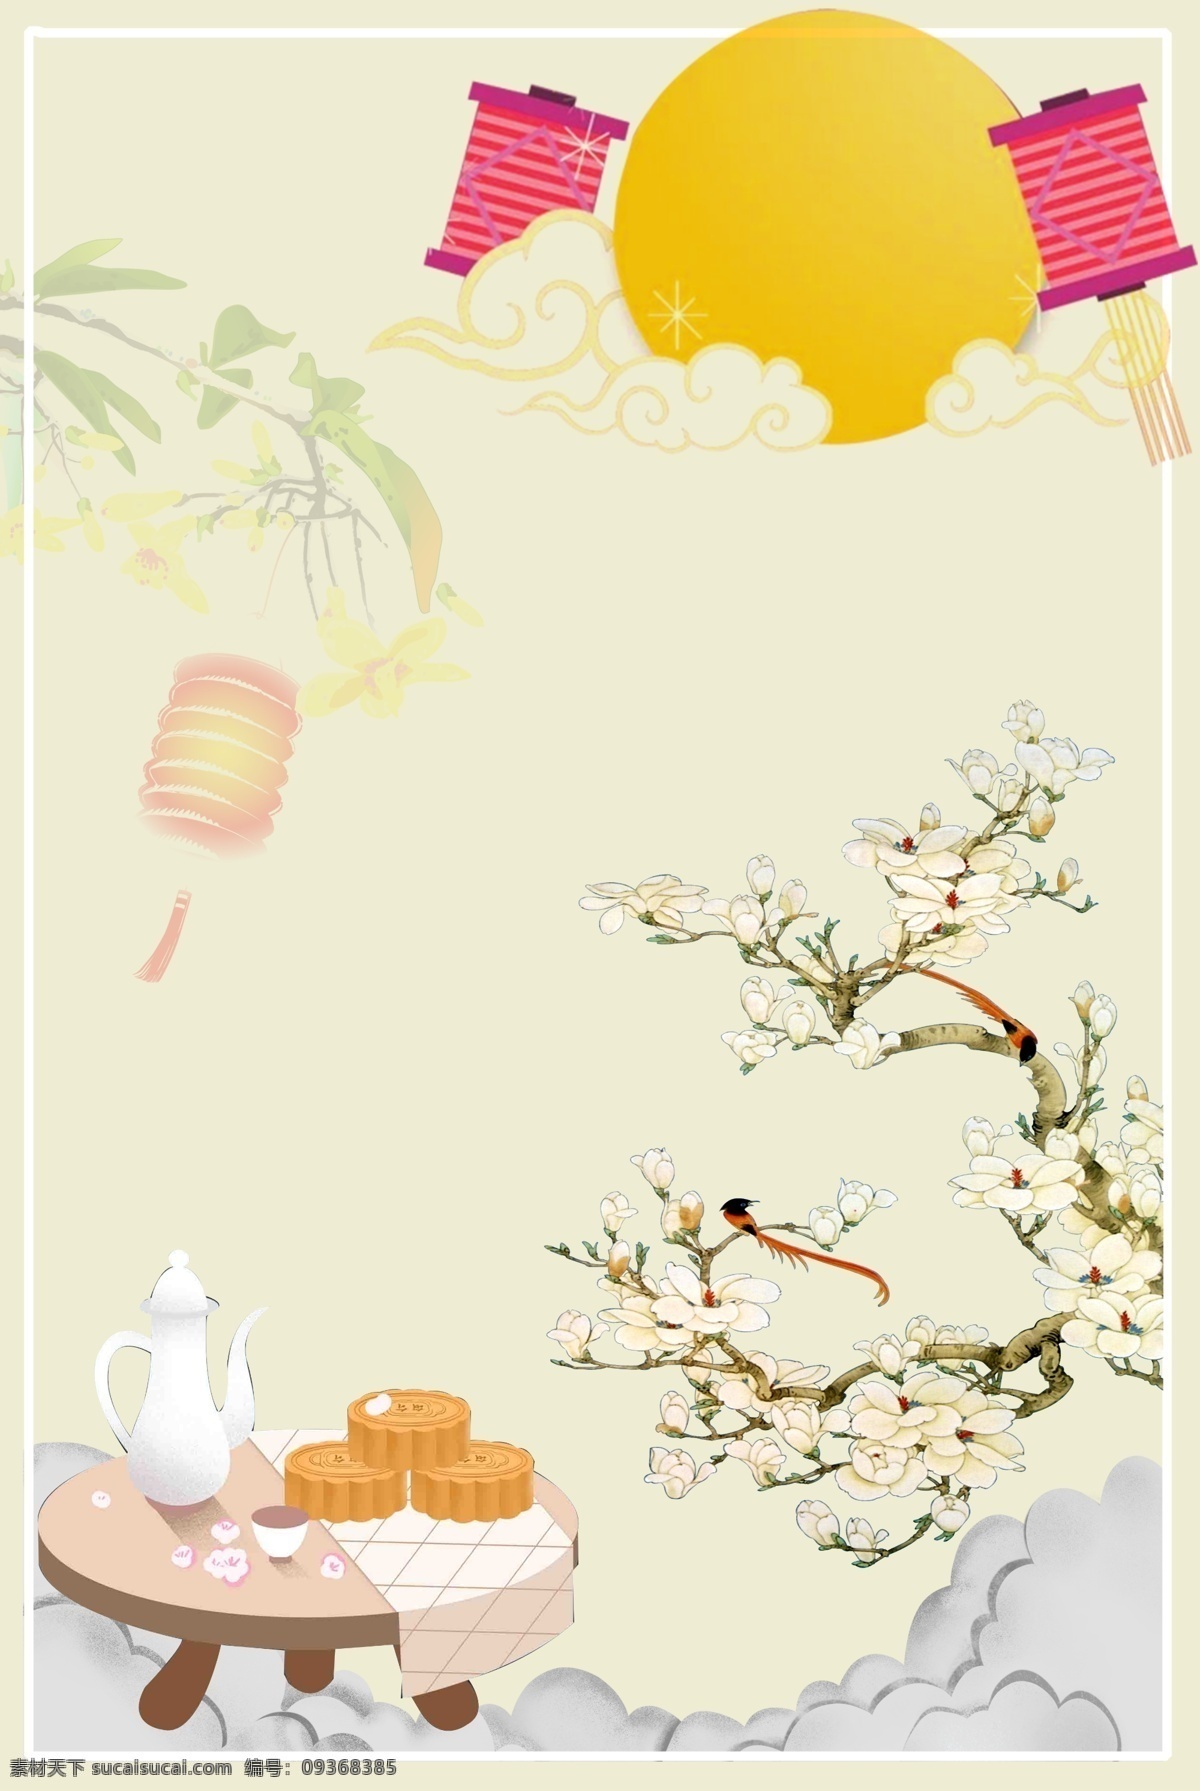 彩色 创意 传统 中秋节 背景 节日 艺术 植物 自然 环境 纹理